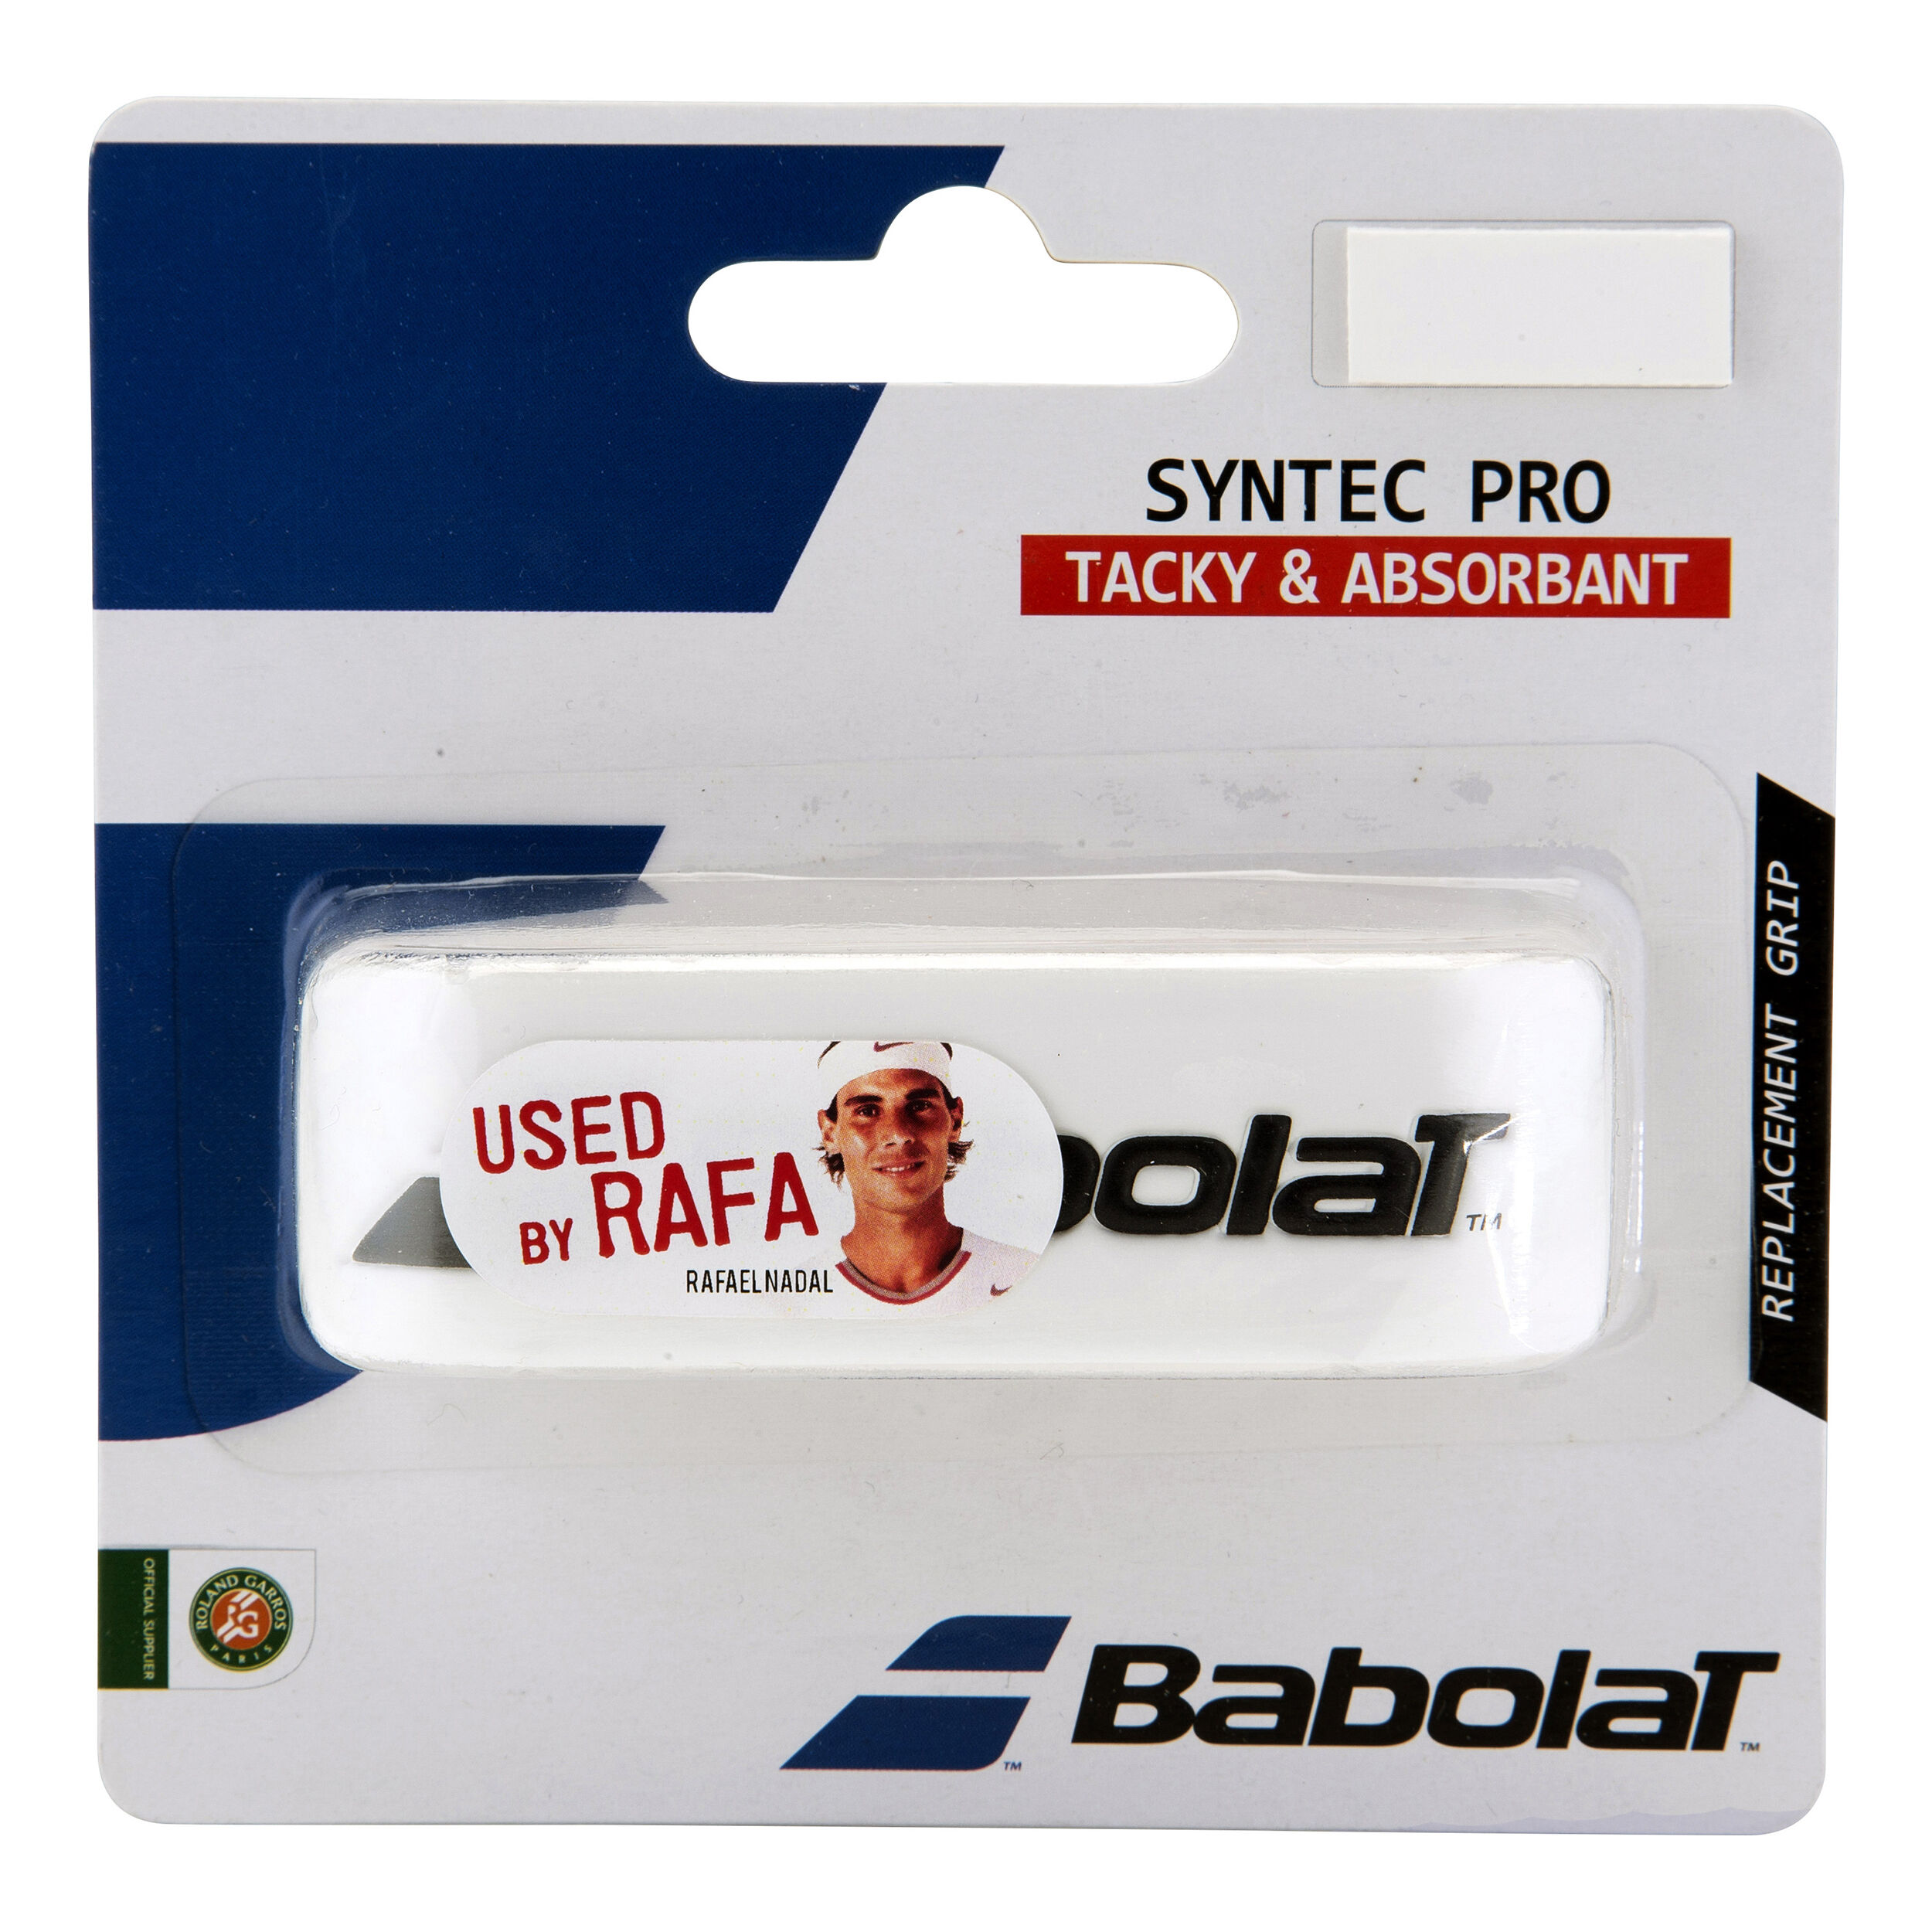 Babolat Syntec EVO Grip Black Basis Griffbänder für Tennis Grips 